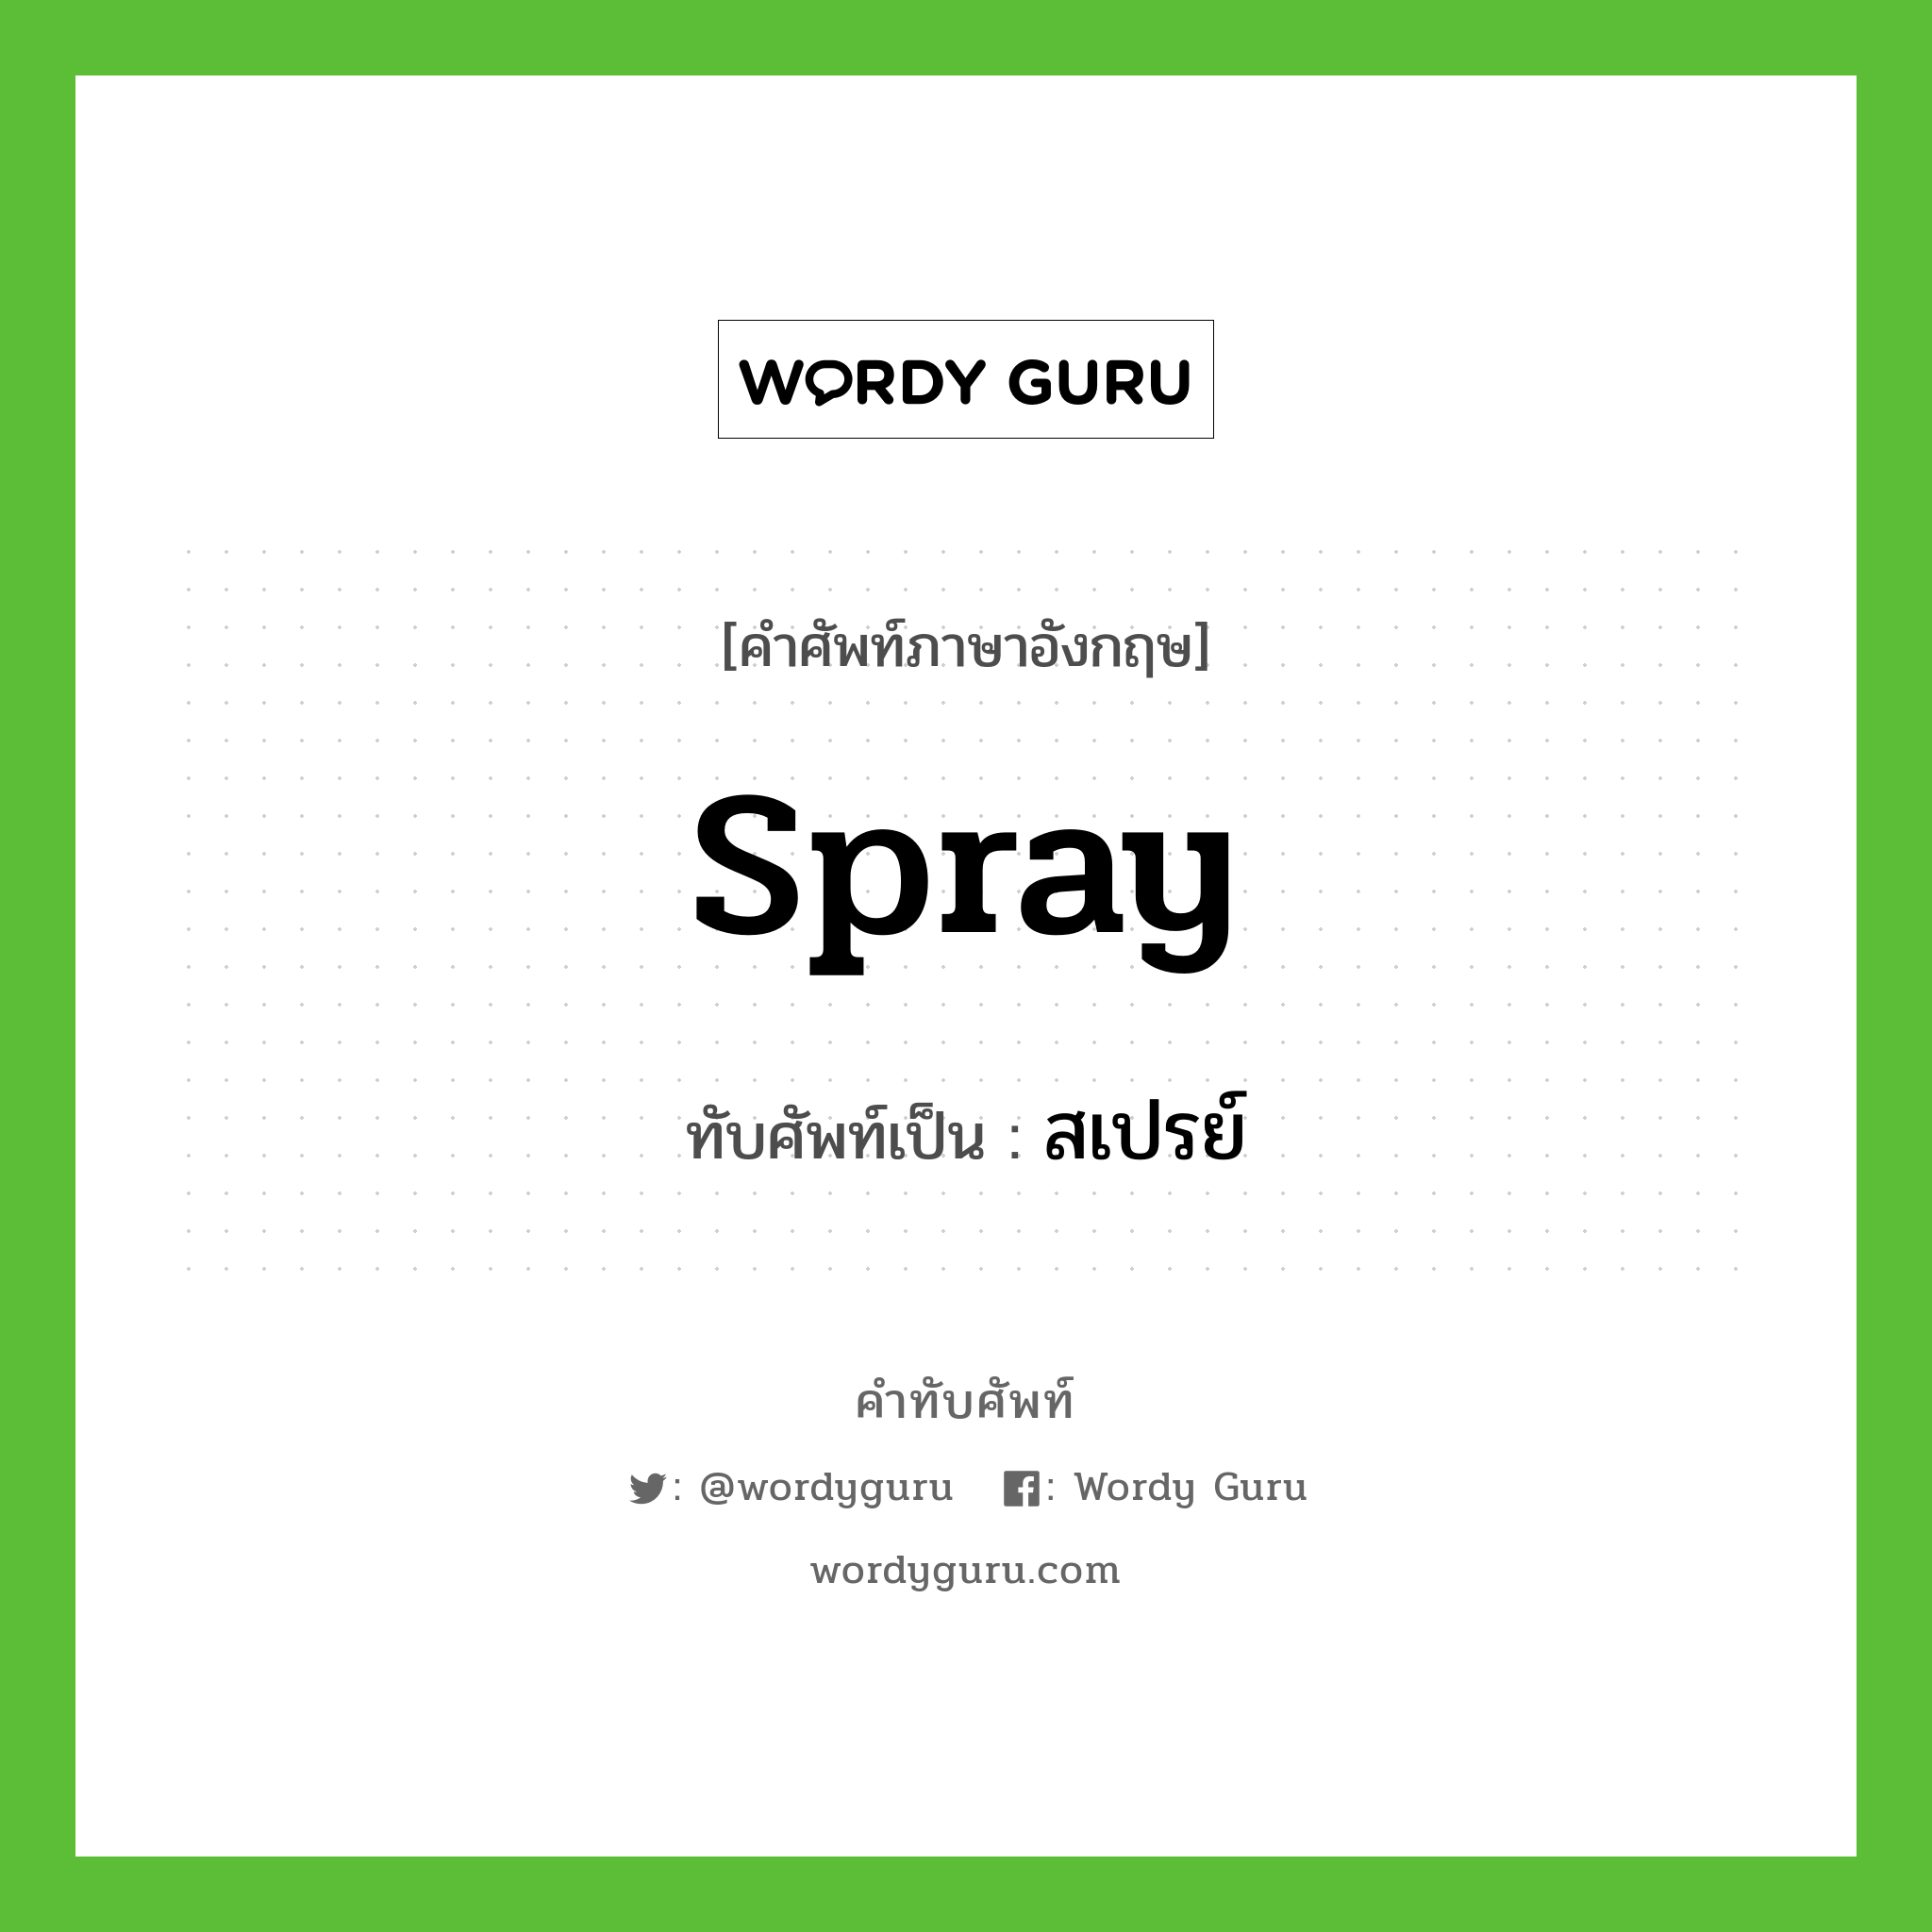 spray เขียนเป็นคำไทยว่าอะไร?, คำศัพท์ภาษาอังกฤษ spray ทับศัพท์เป็น สเปรย์